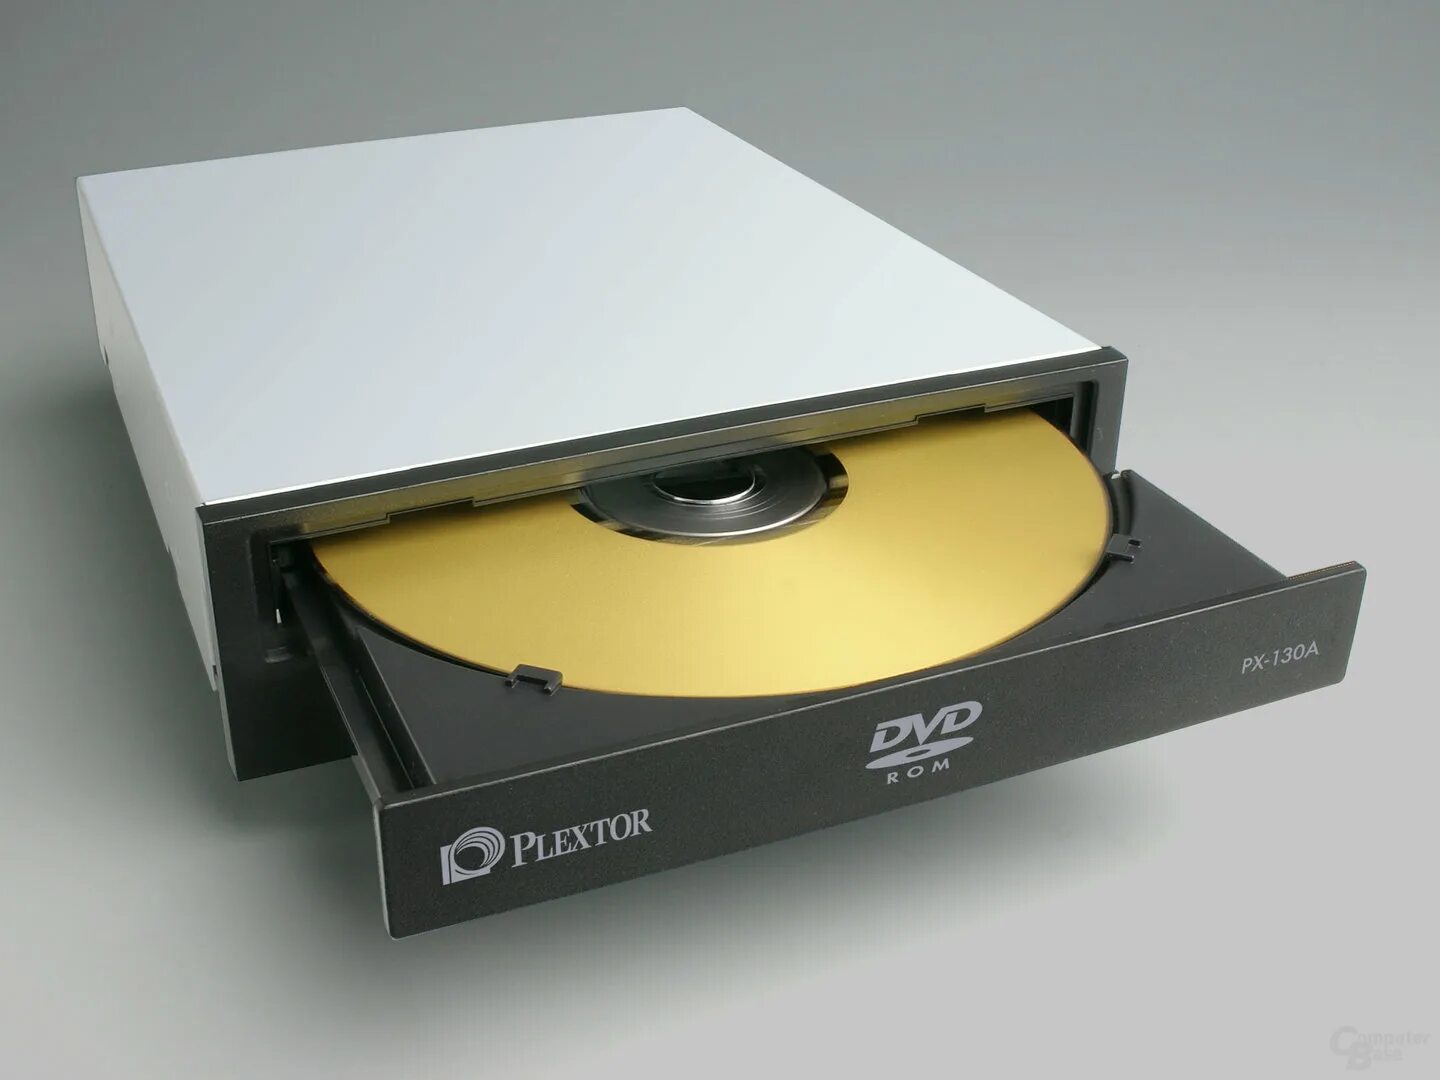 Привод DVD RW Plextor. Plextor px-130a. Оптический привод Plextor px-116a White. Plextor DVD-ROM.